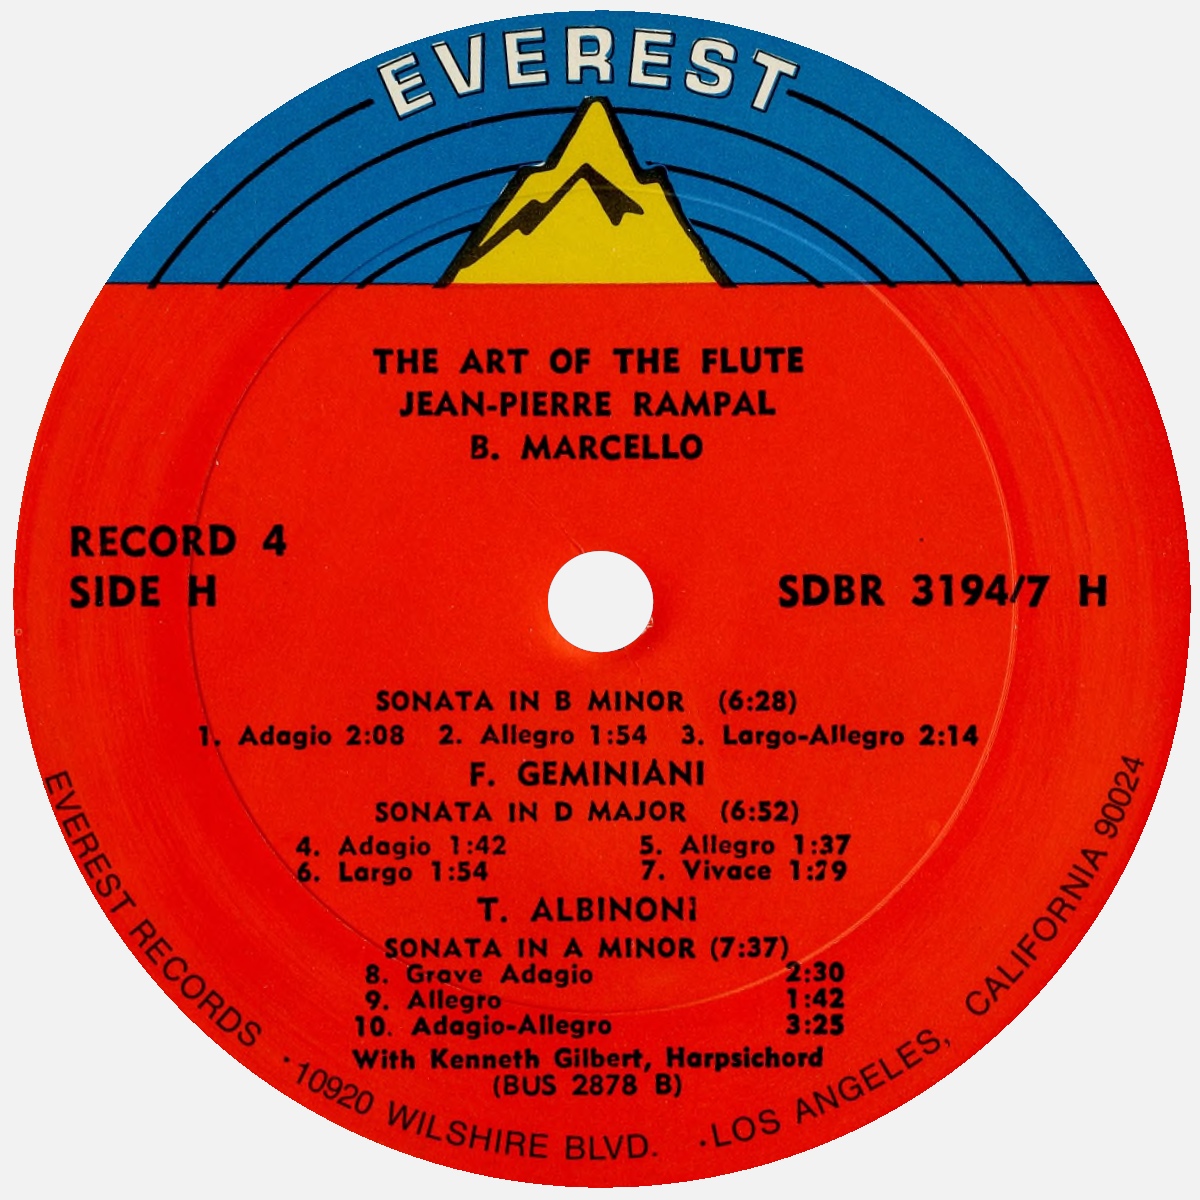 Étiquette verso du 4e disque du coffret Everest 3194-7